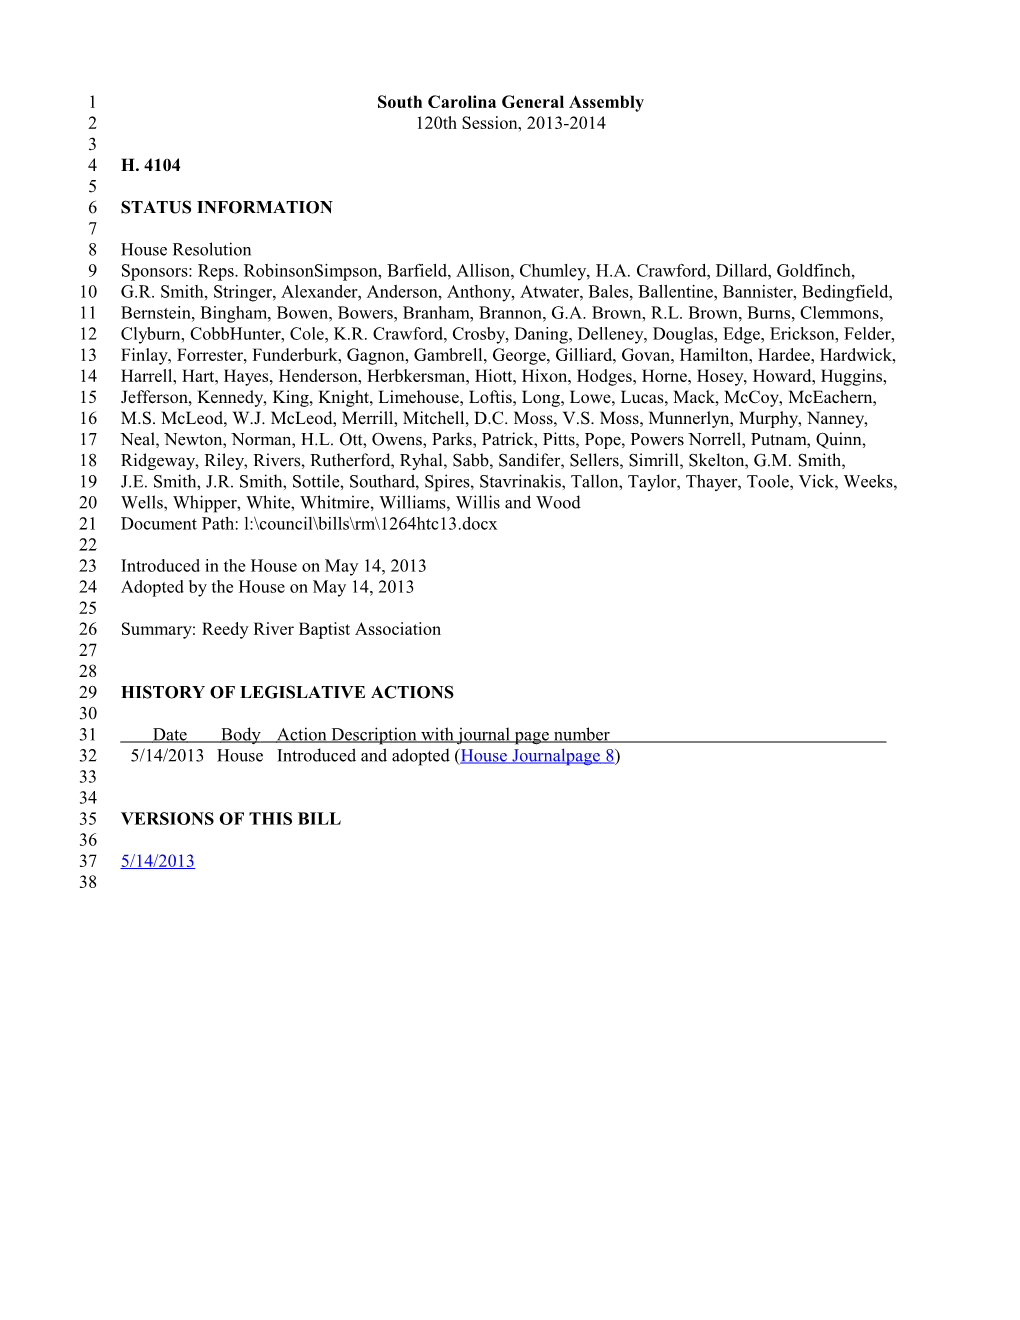 2013-2014 Bill 4104: Reedy River Baptist Association - South Carolina Legislature Online